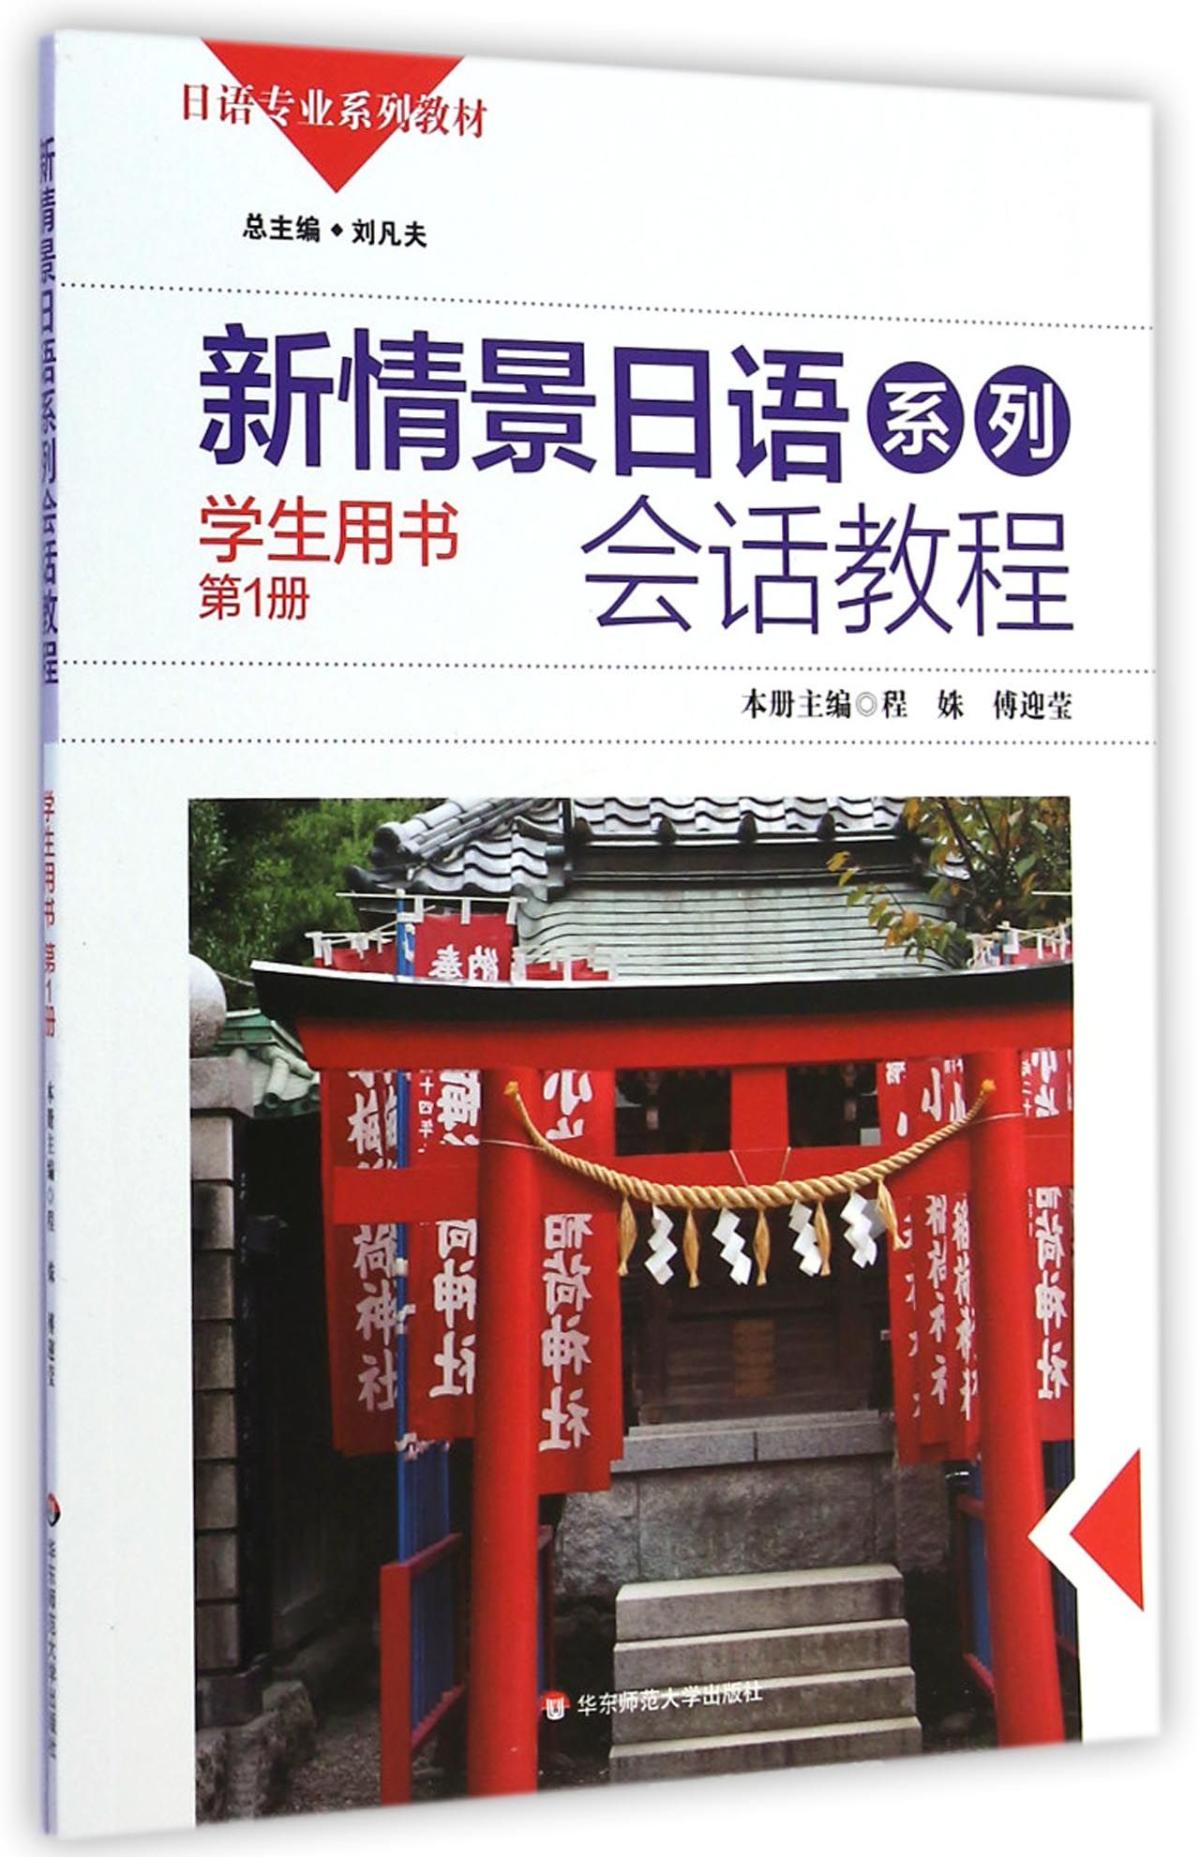 新情景日语系列会话教程(学生用书第1册日语专业系列教材)